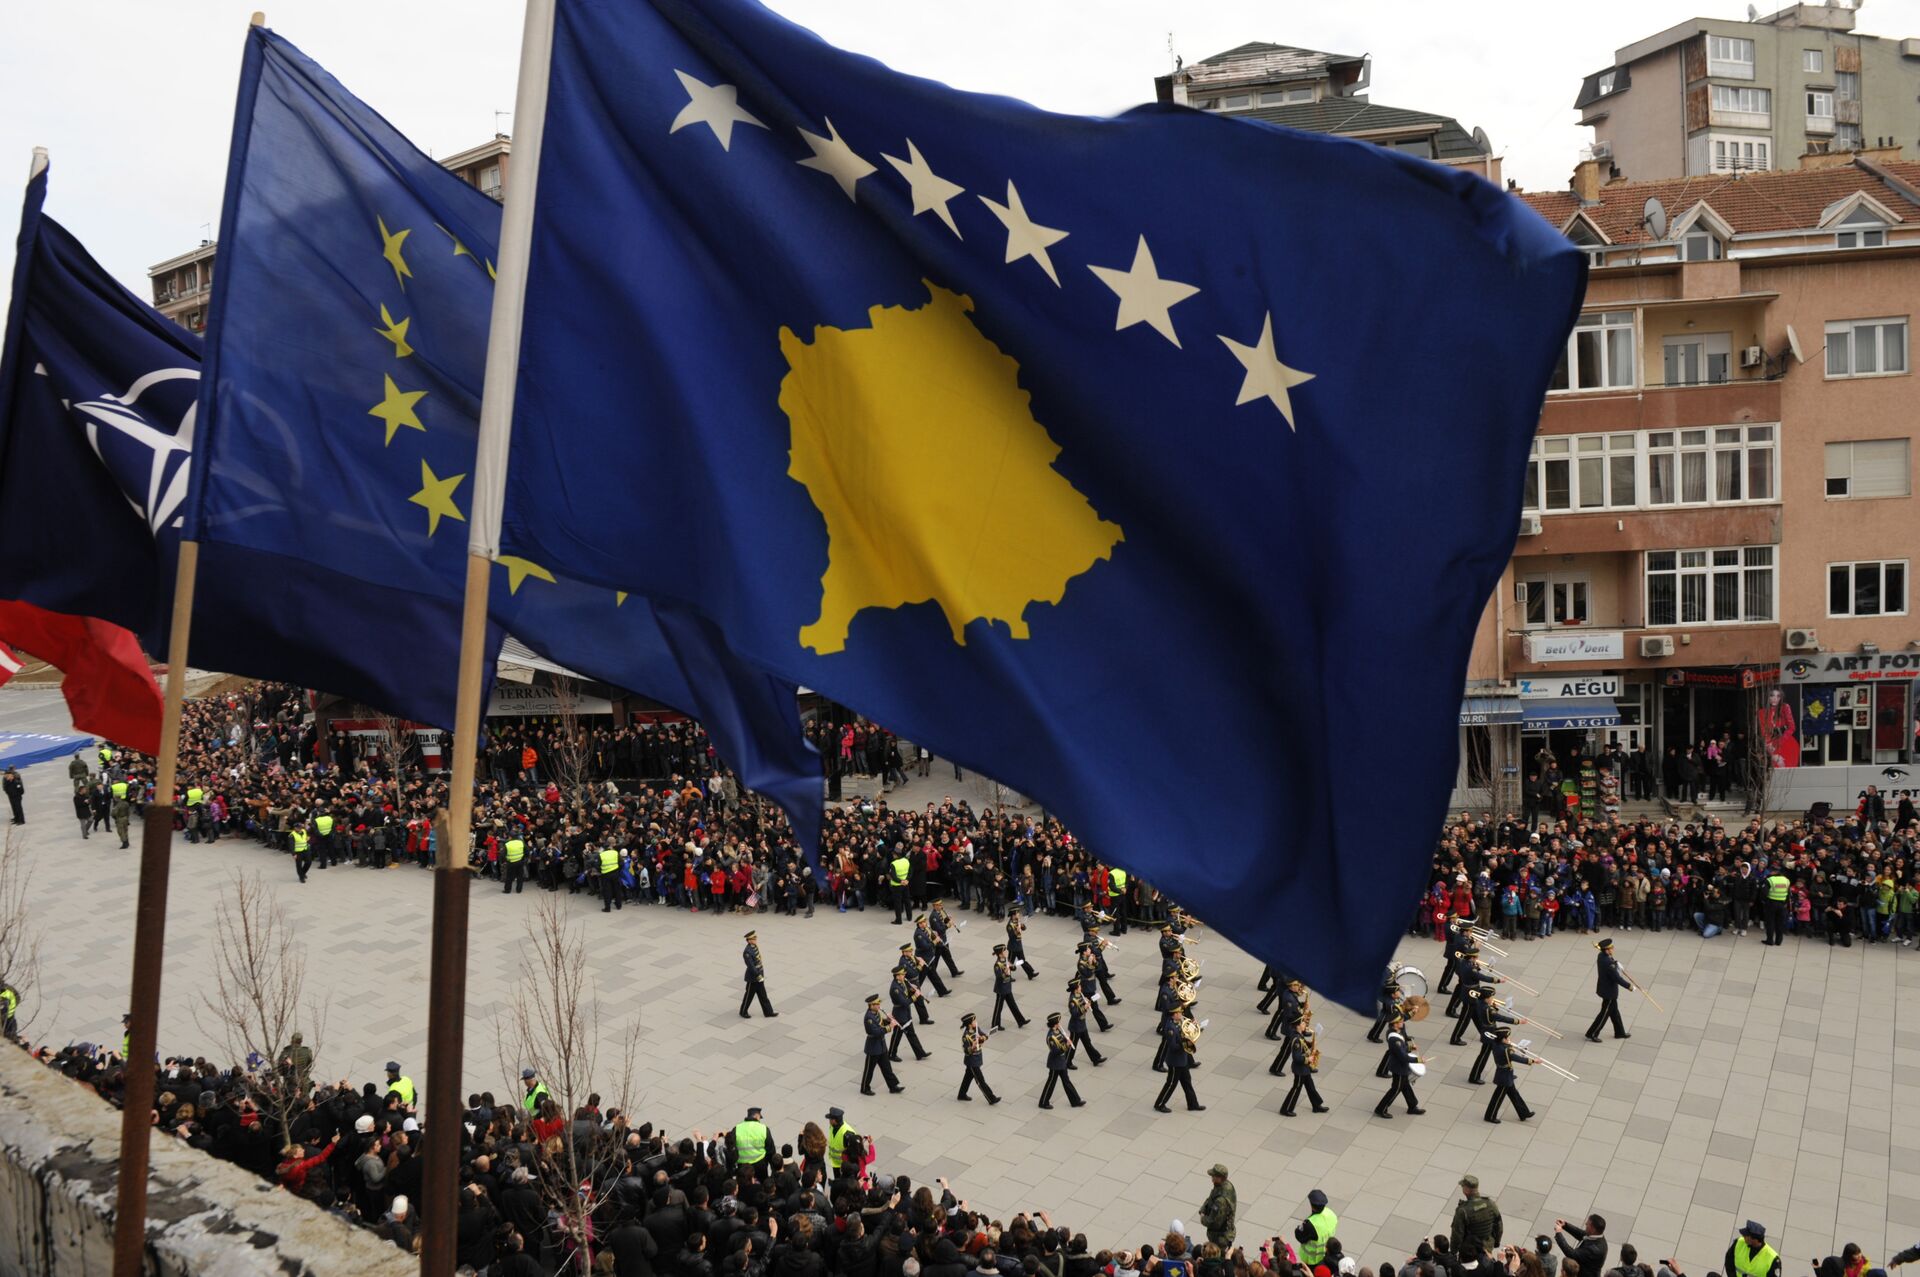 Vojna parada tzv. Kosova u Prištini održana 17. feb. 2013. - Sputnik Srbija, 1920, 10.12.2021